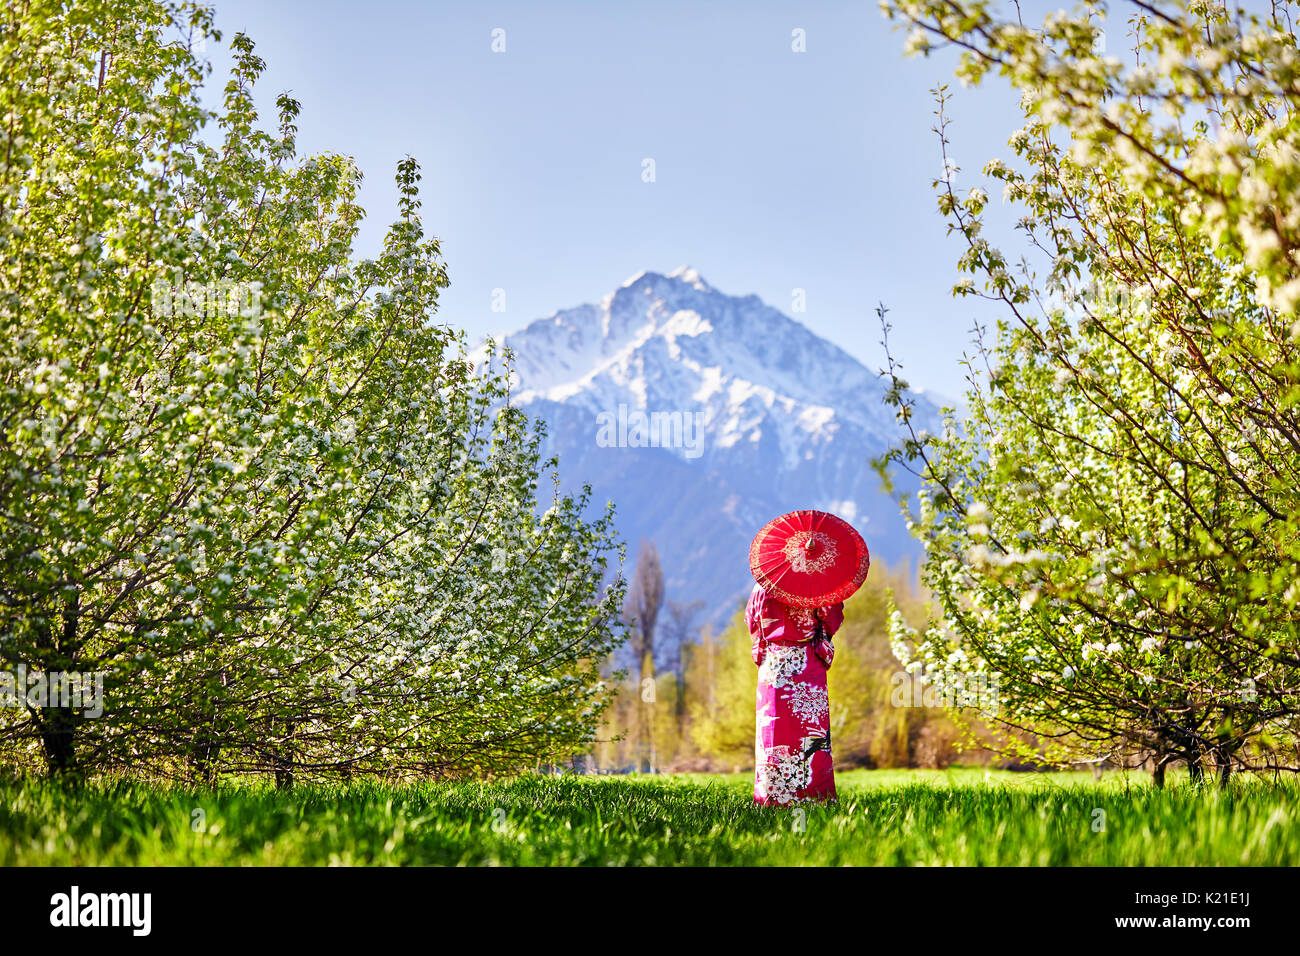 Mujer en kimono con sombrilla roja en el jardín de los cerezos en flor en el fondo de montaña Foto de stock